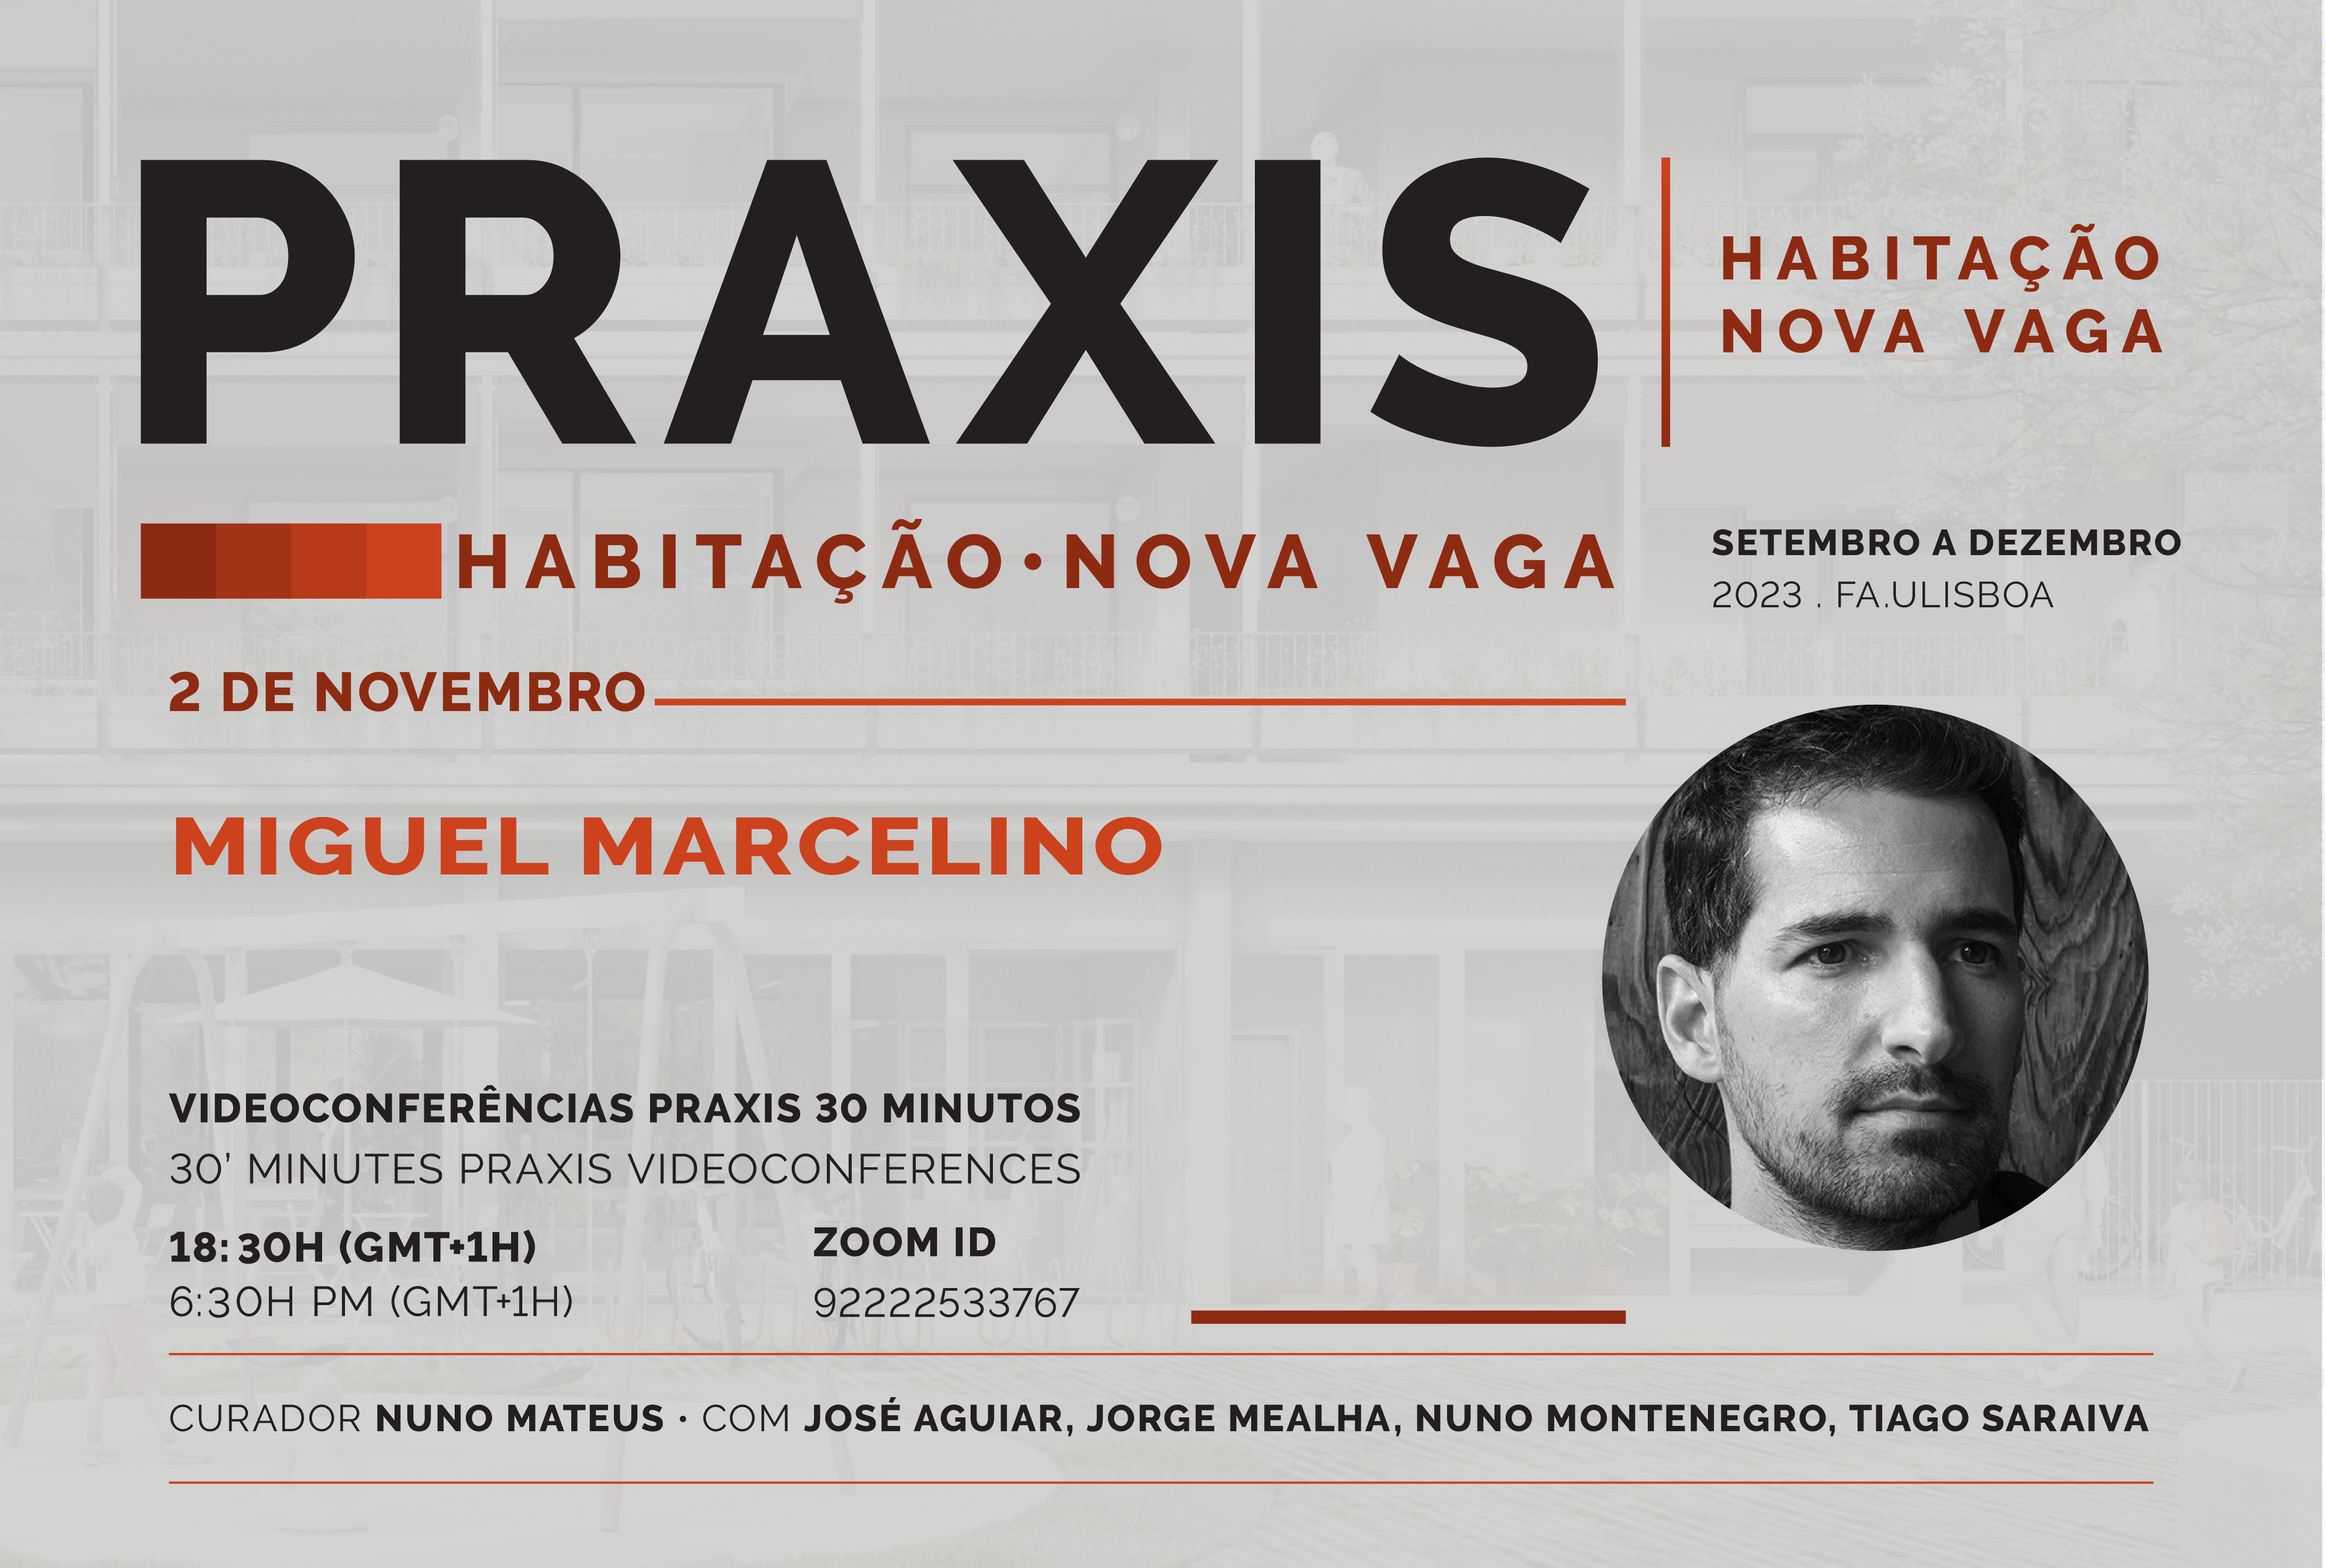 Praxis | Habitação Nova Vaga com Miguel Marcelino, dia 2 de novembro, pelas 18h30, online